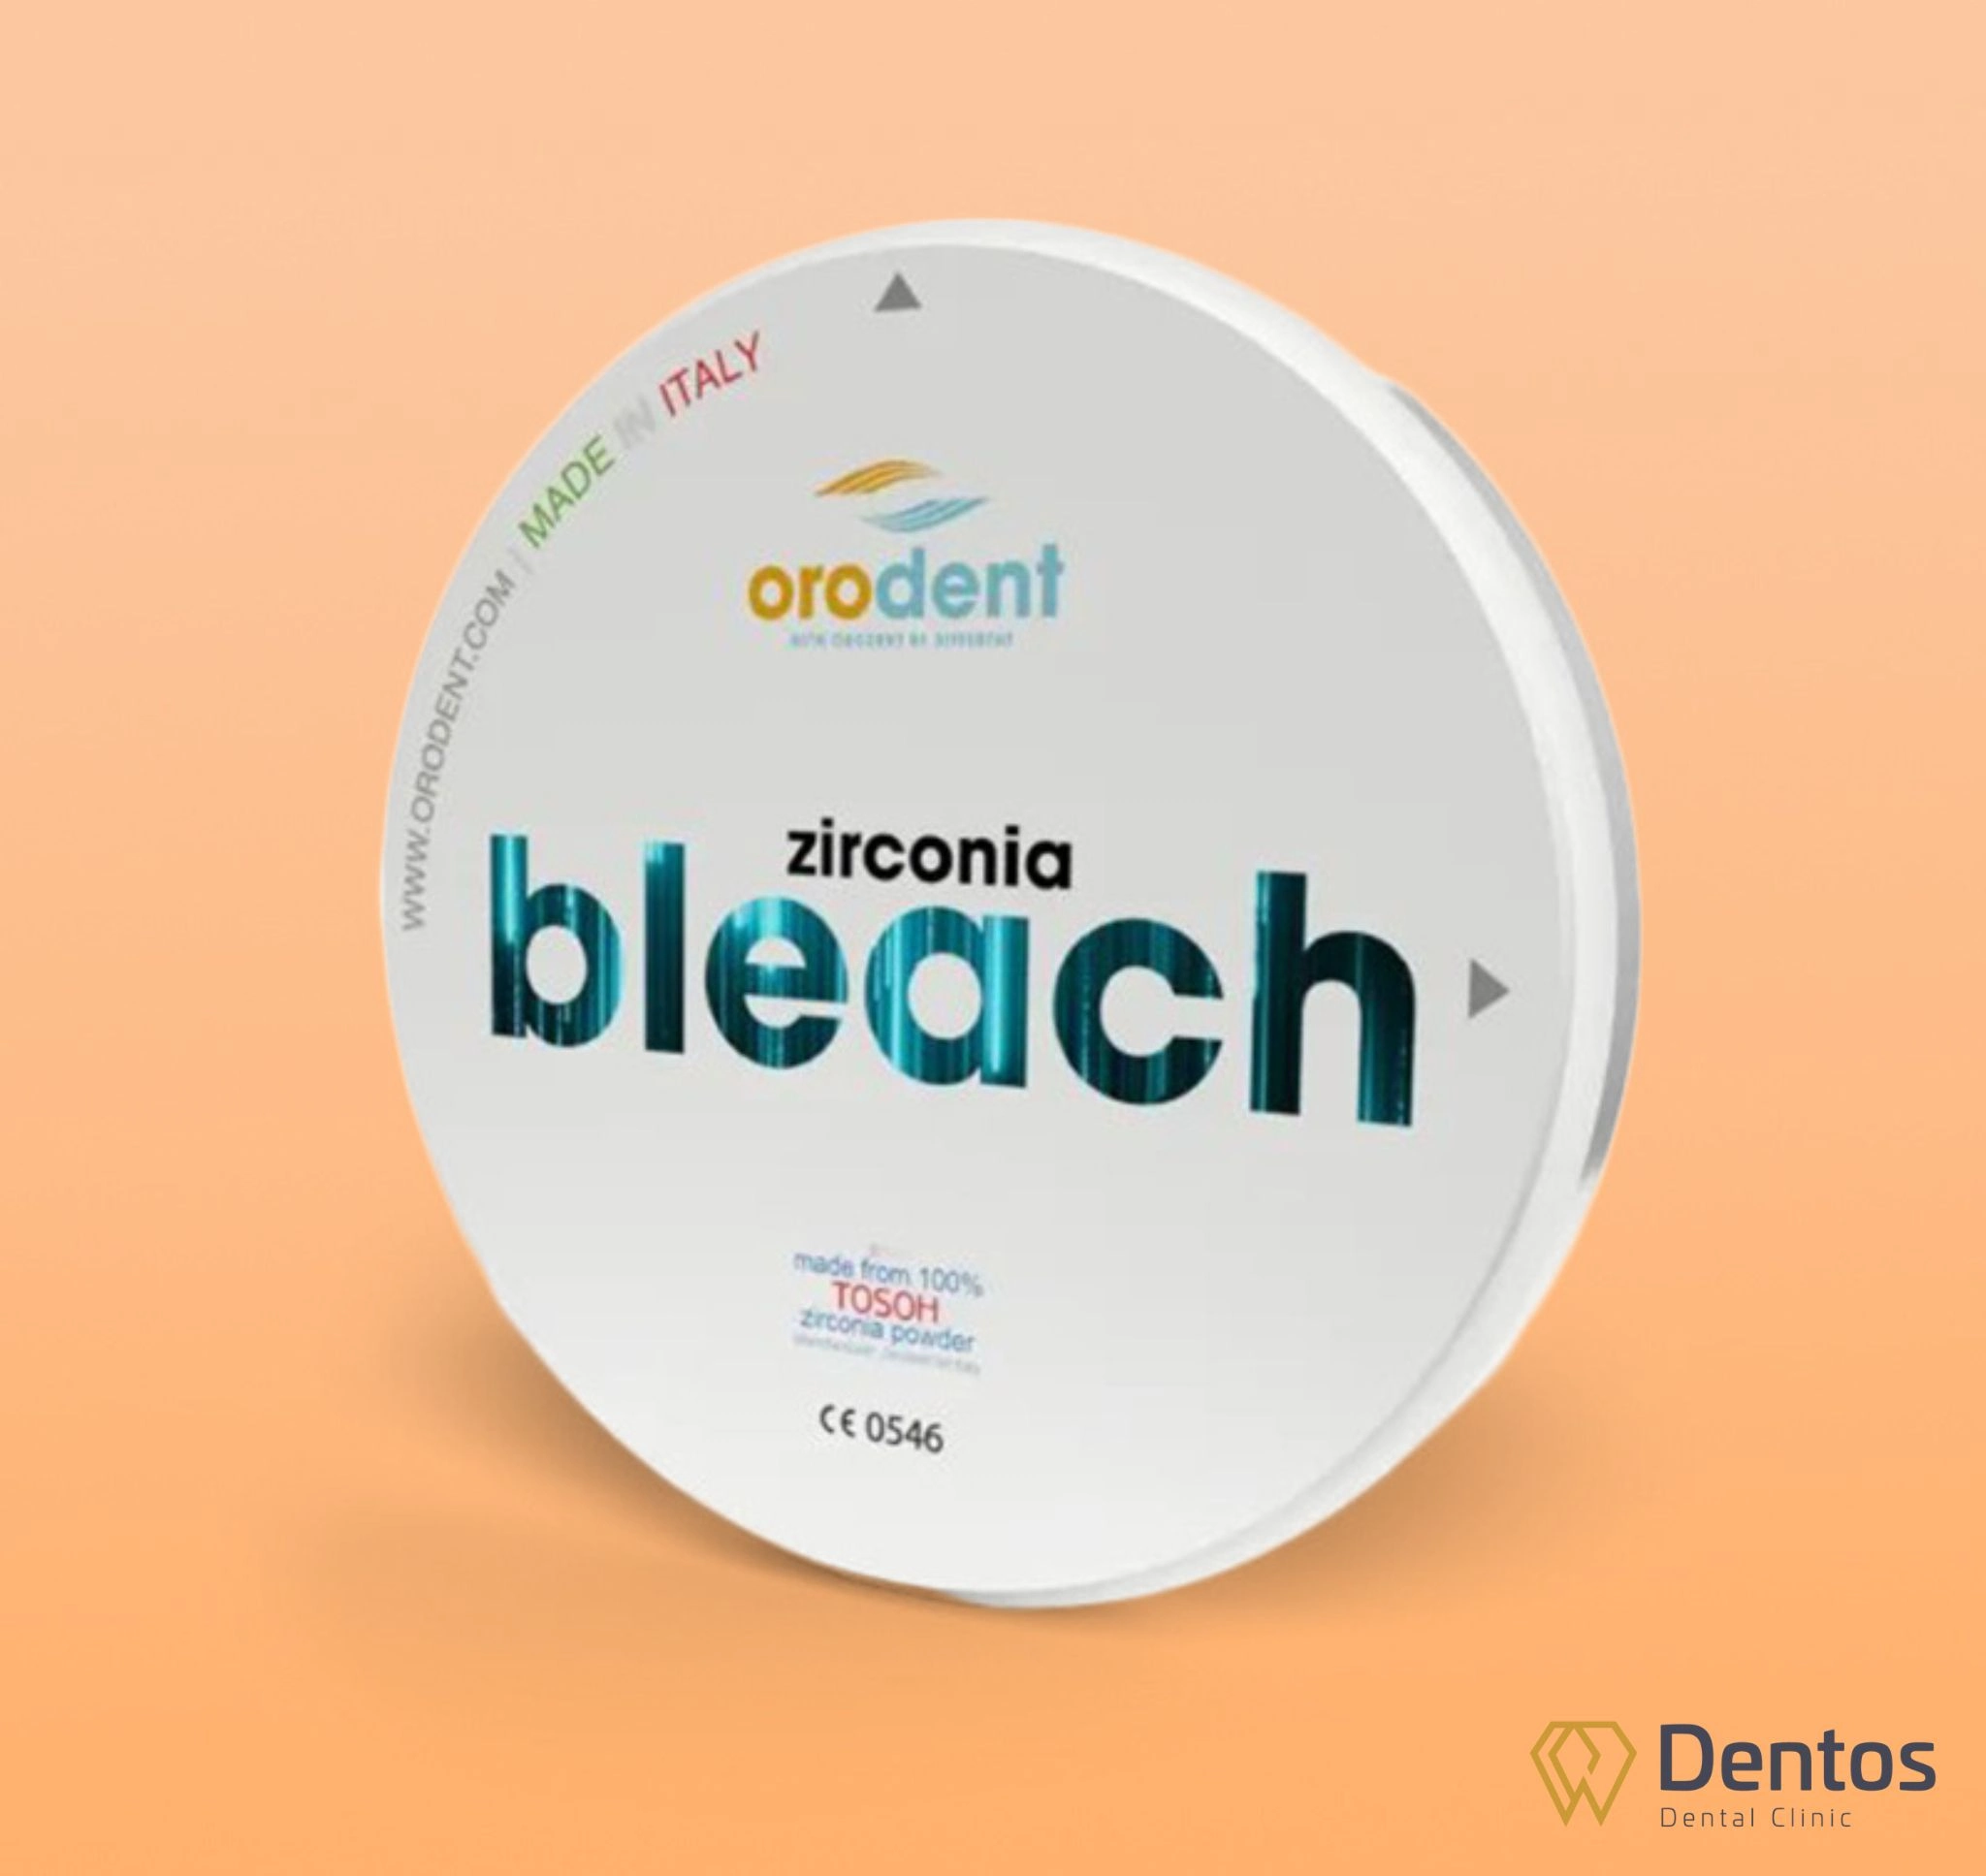 Orodent là dòng răng sứ thẩm mỹ được chế tác hoàn toàn từ bột sứ TOSOH Zirconia